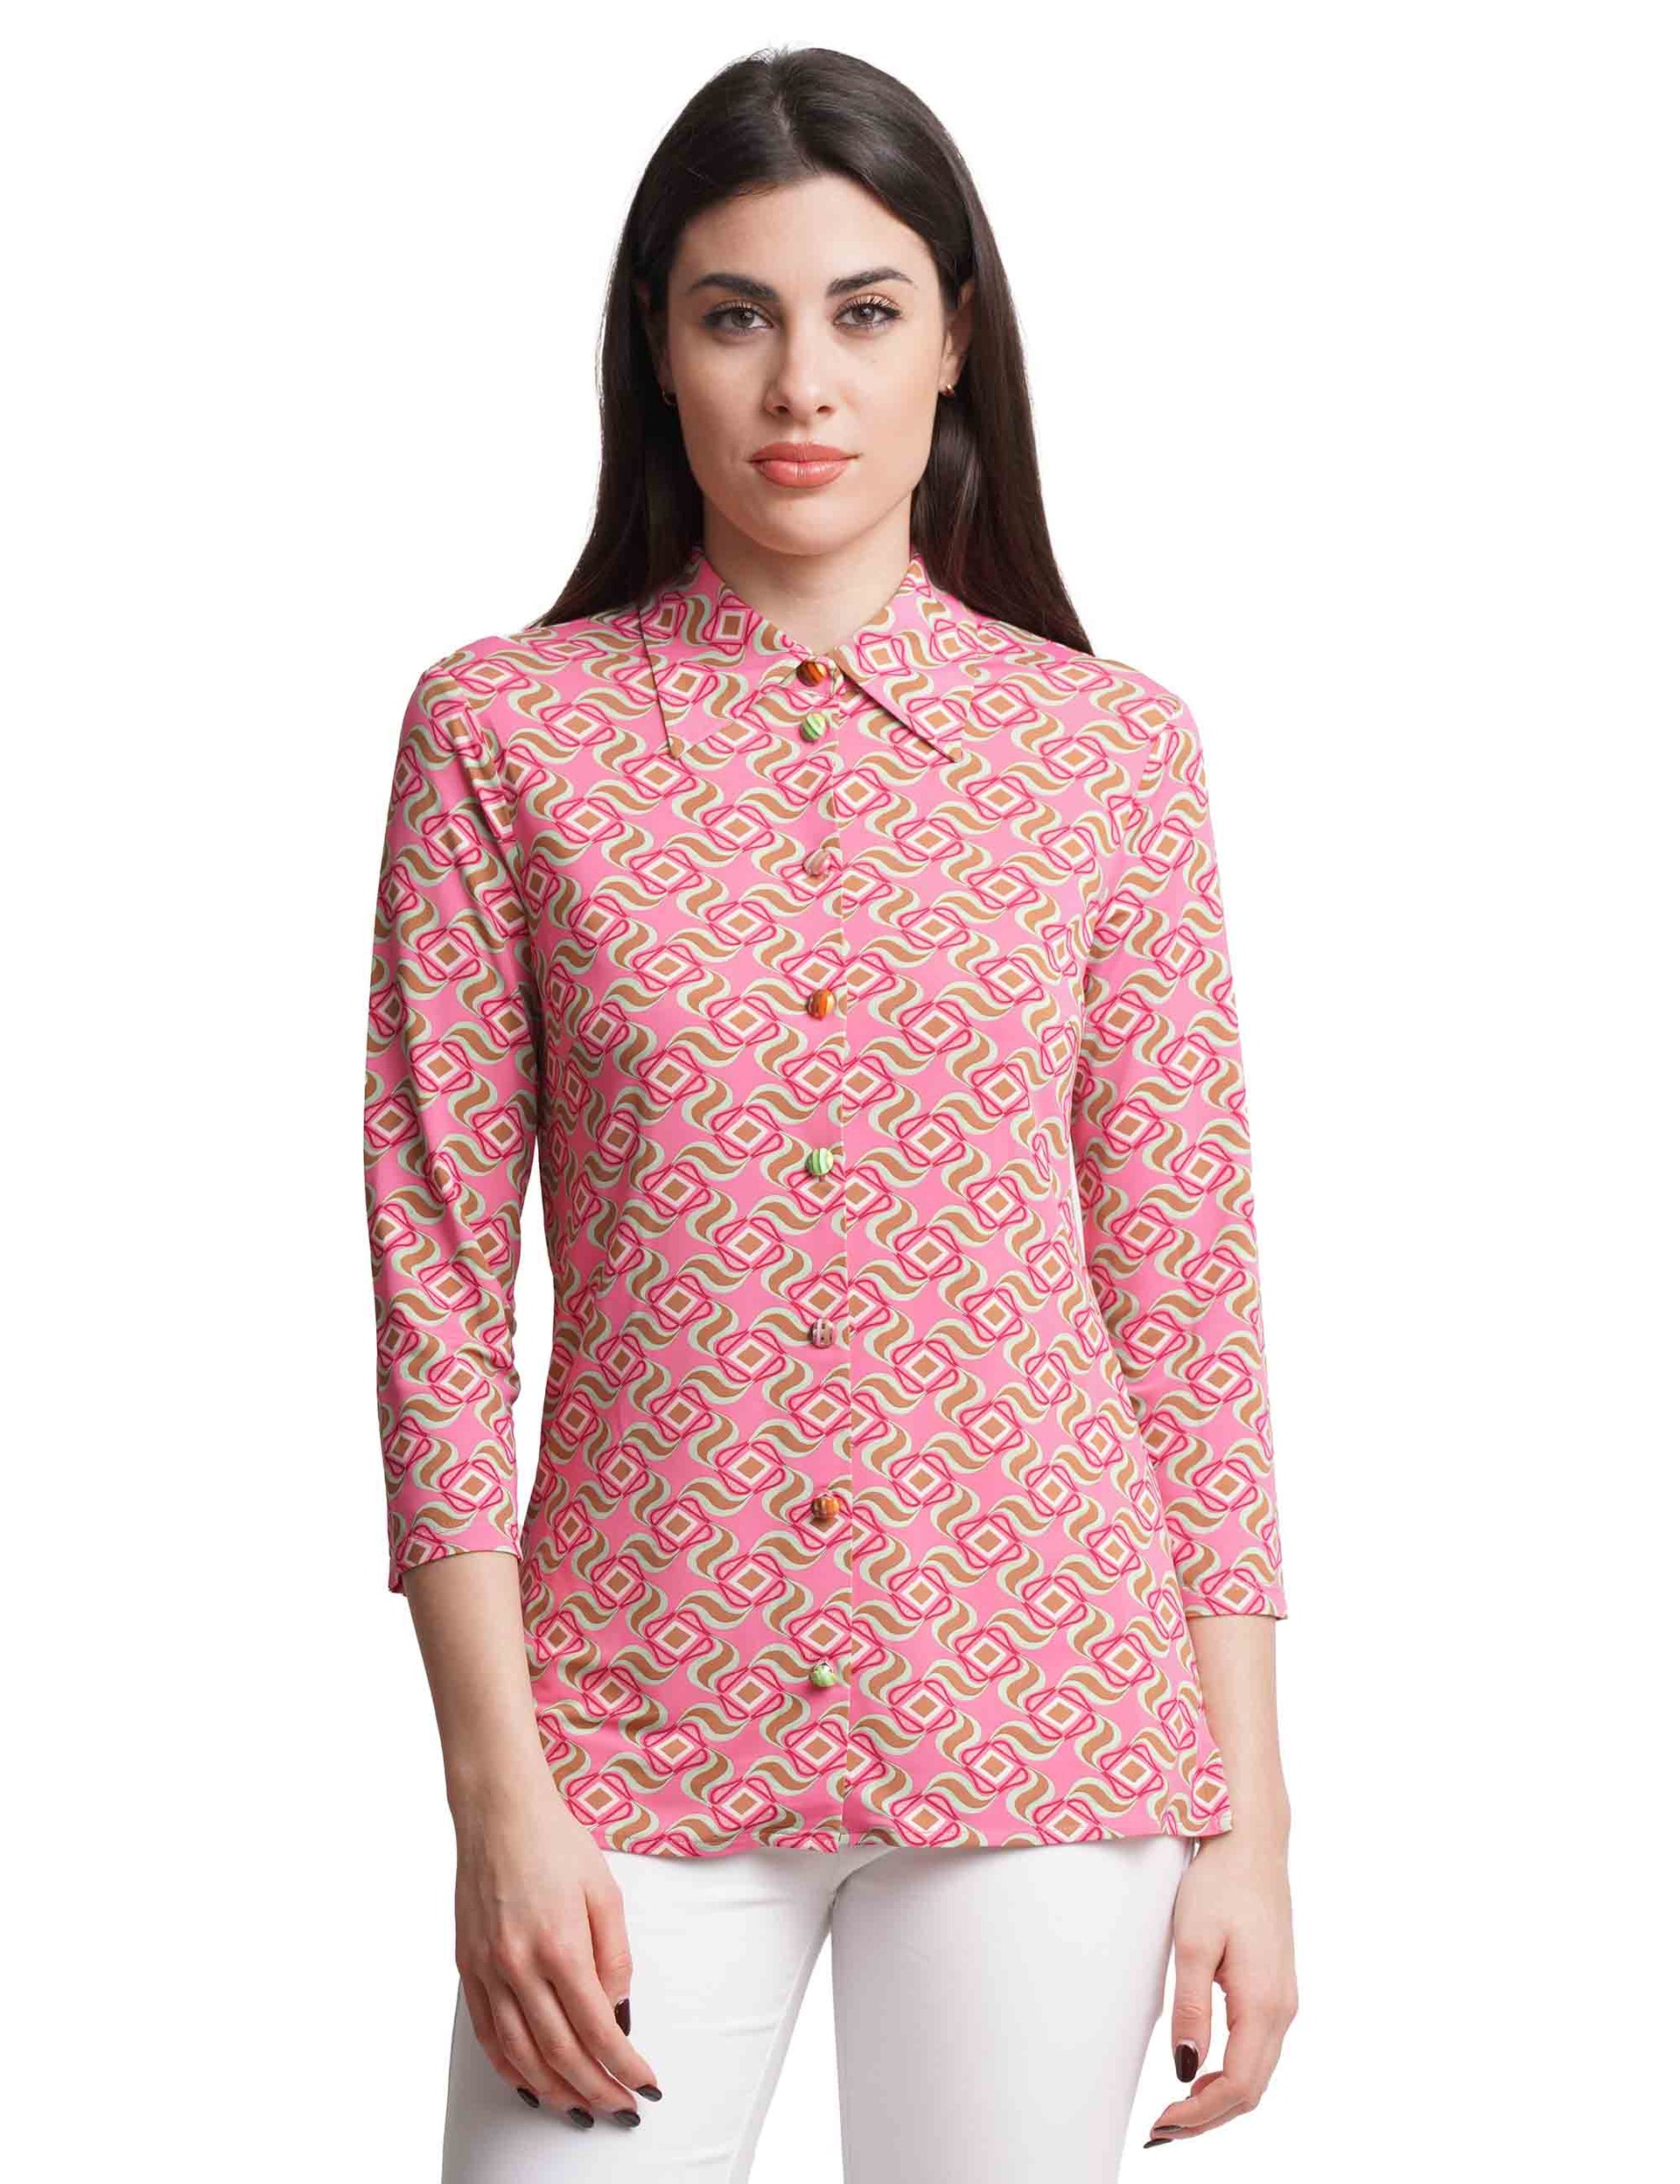 Camicie donna Swirl Print in jersey rosa con maniche 3/4